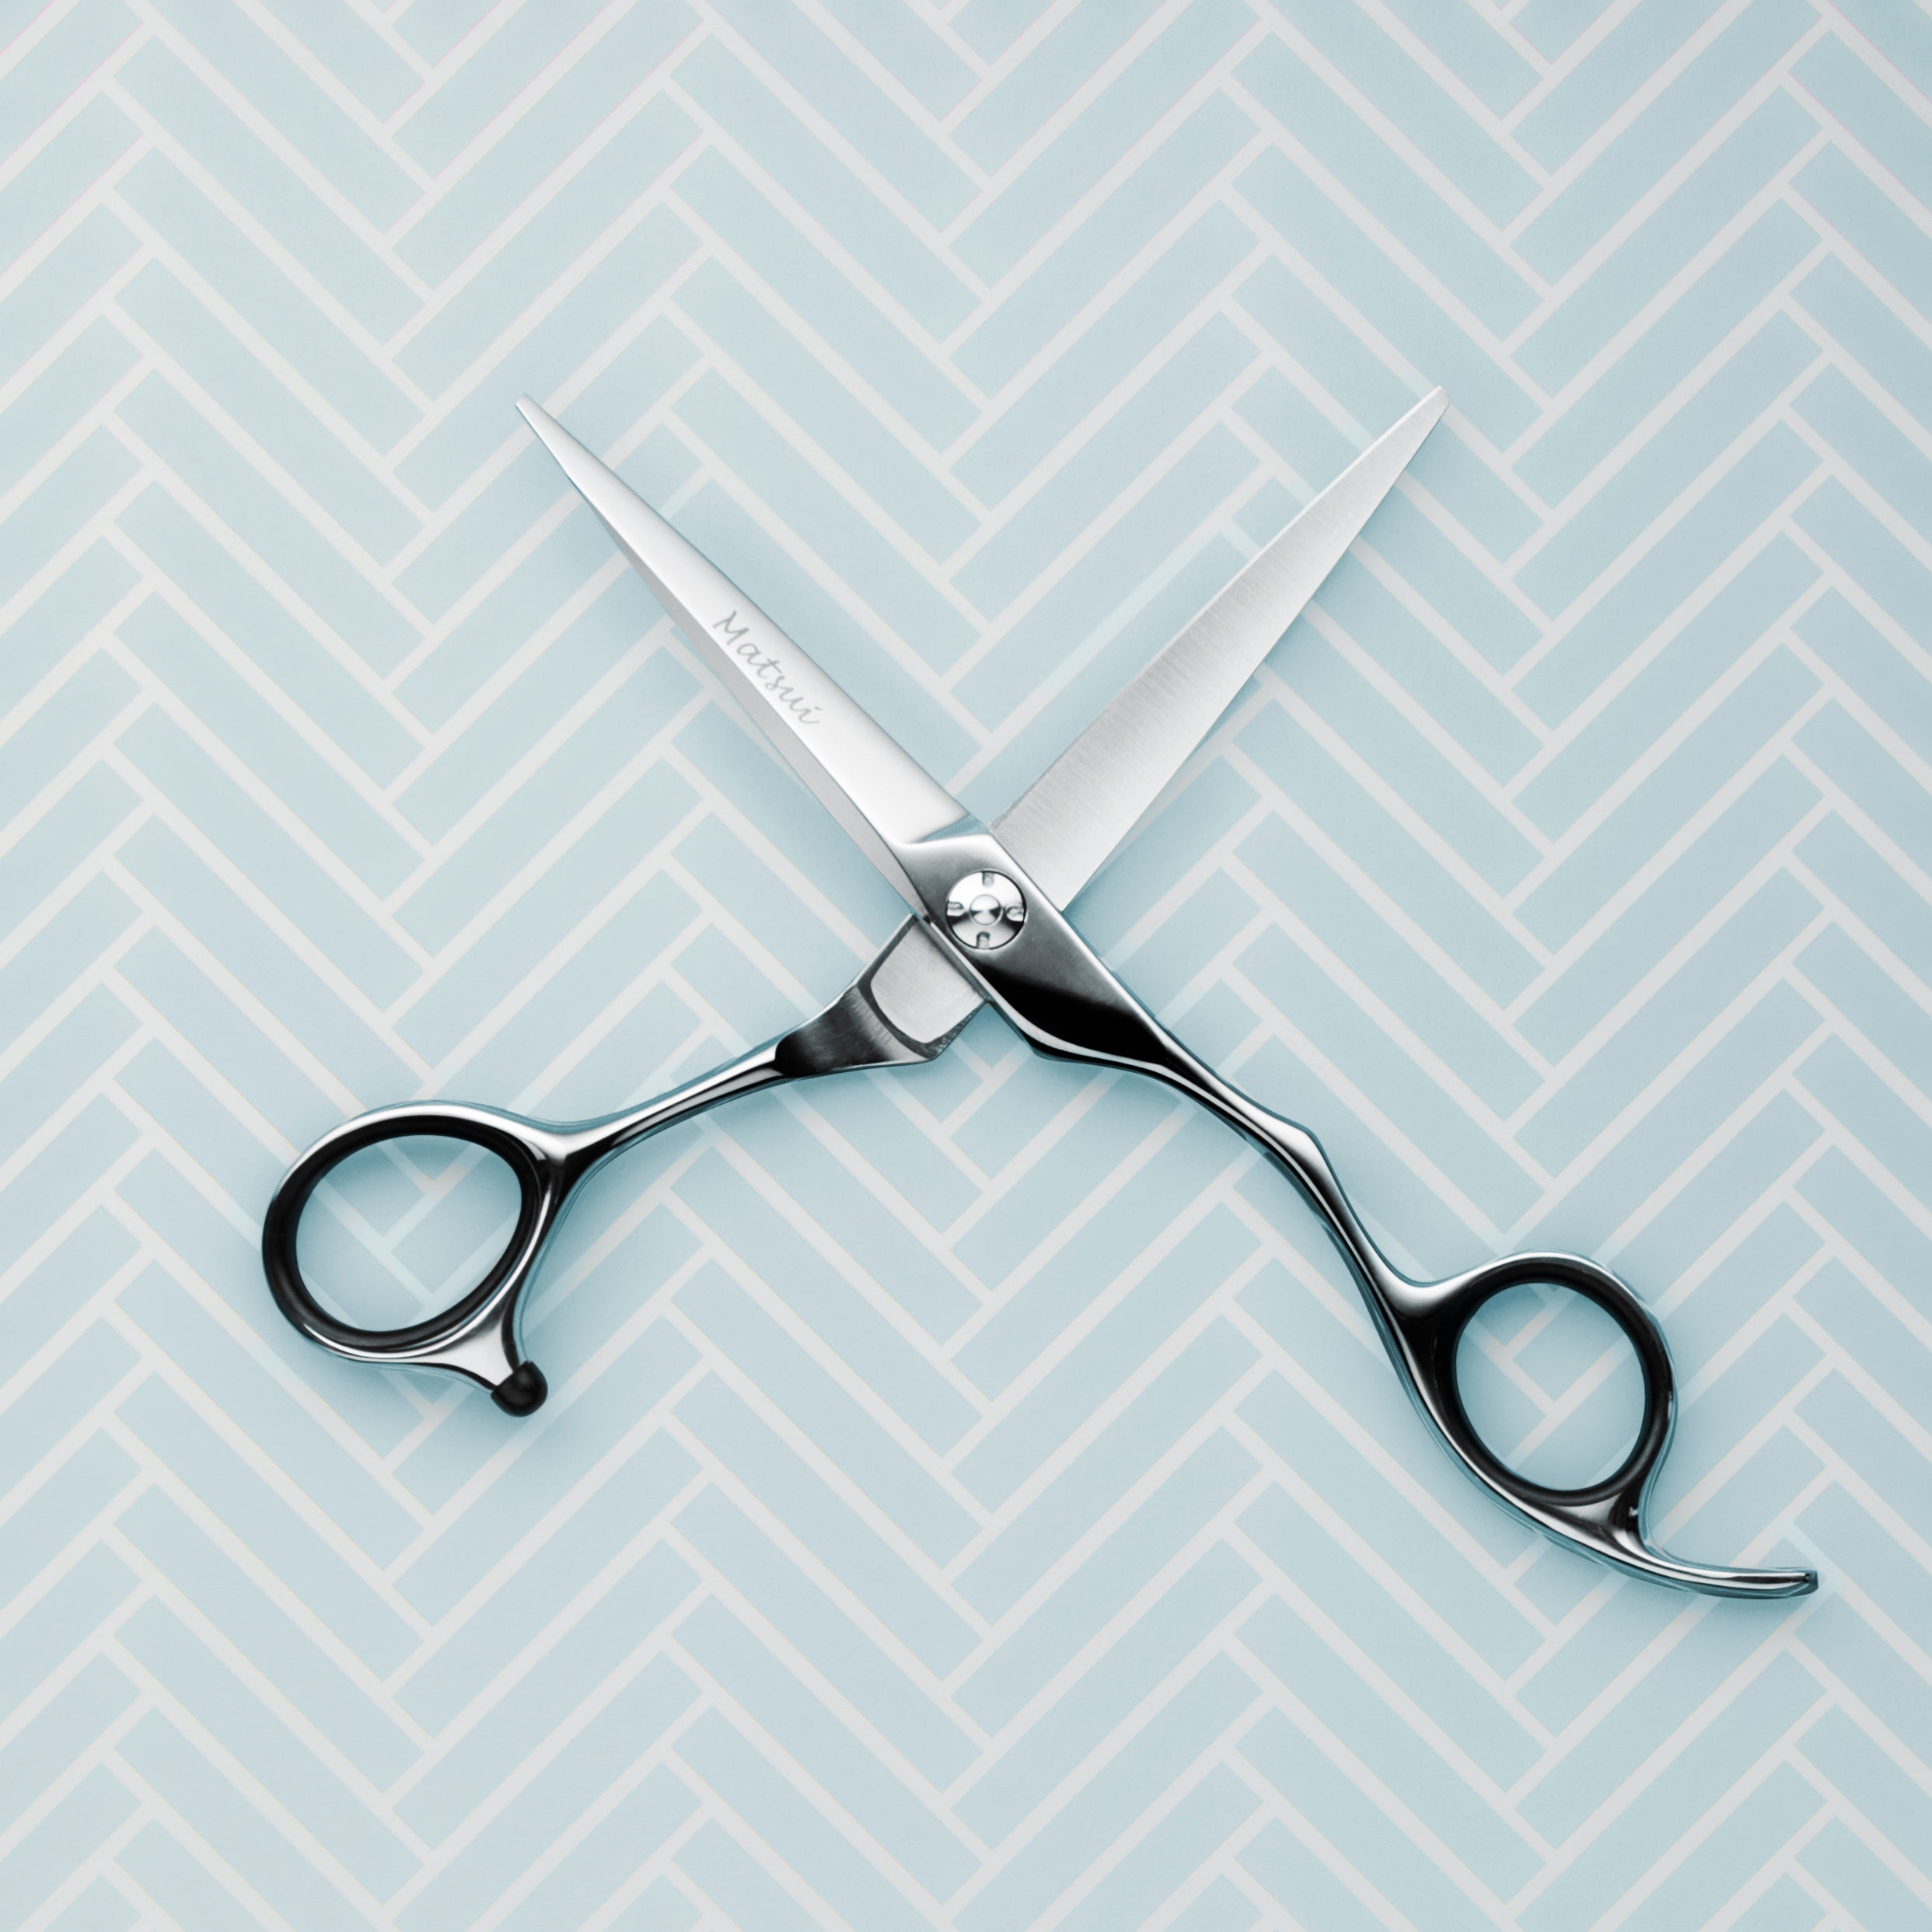 Hairdresser Scissor Sharpening Price